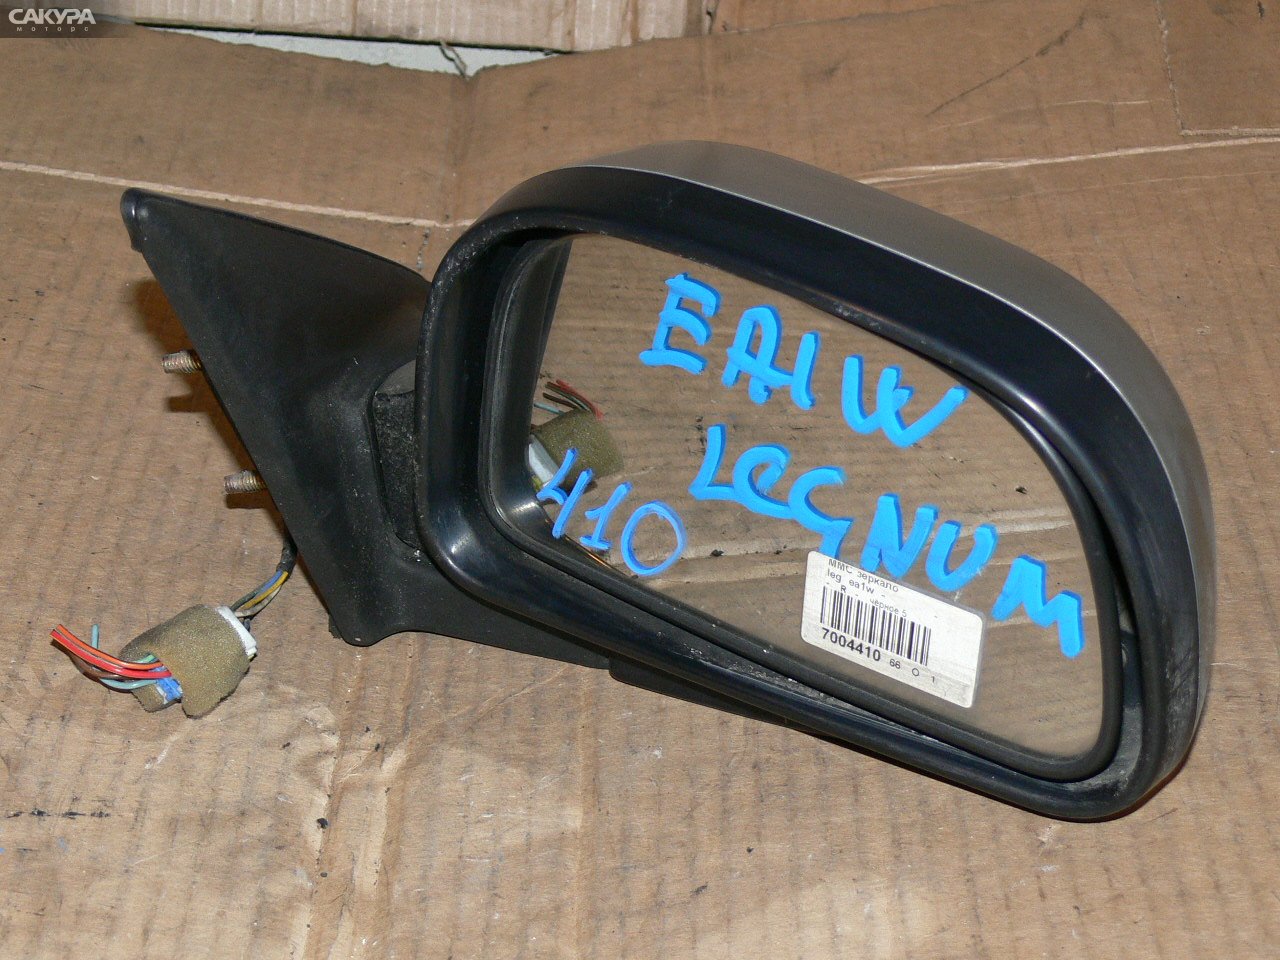 Зеркало боковое правое Mitsubishi Legnum EA1W: купить в Сакура Иркутск.